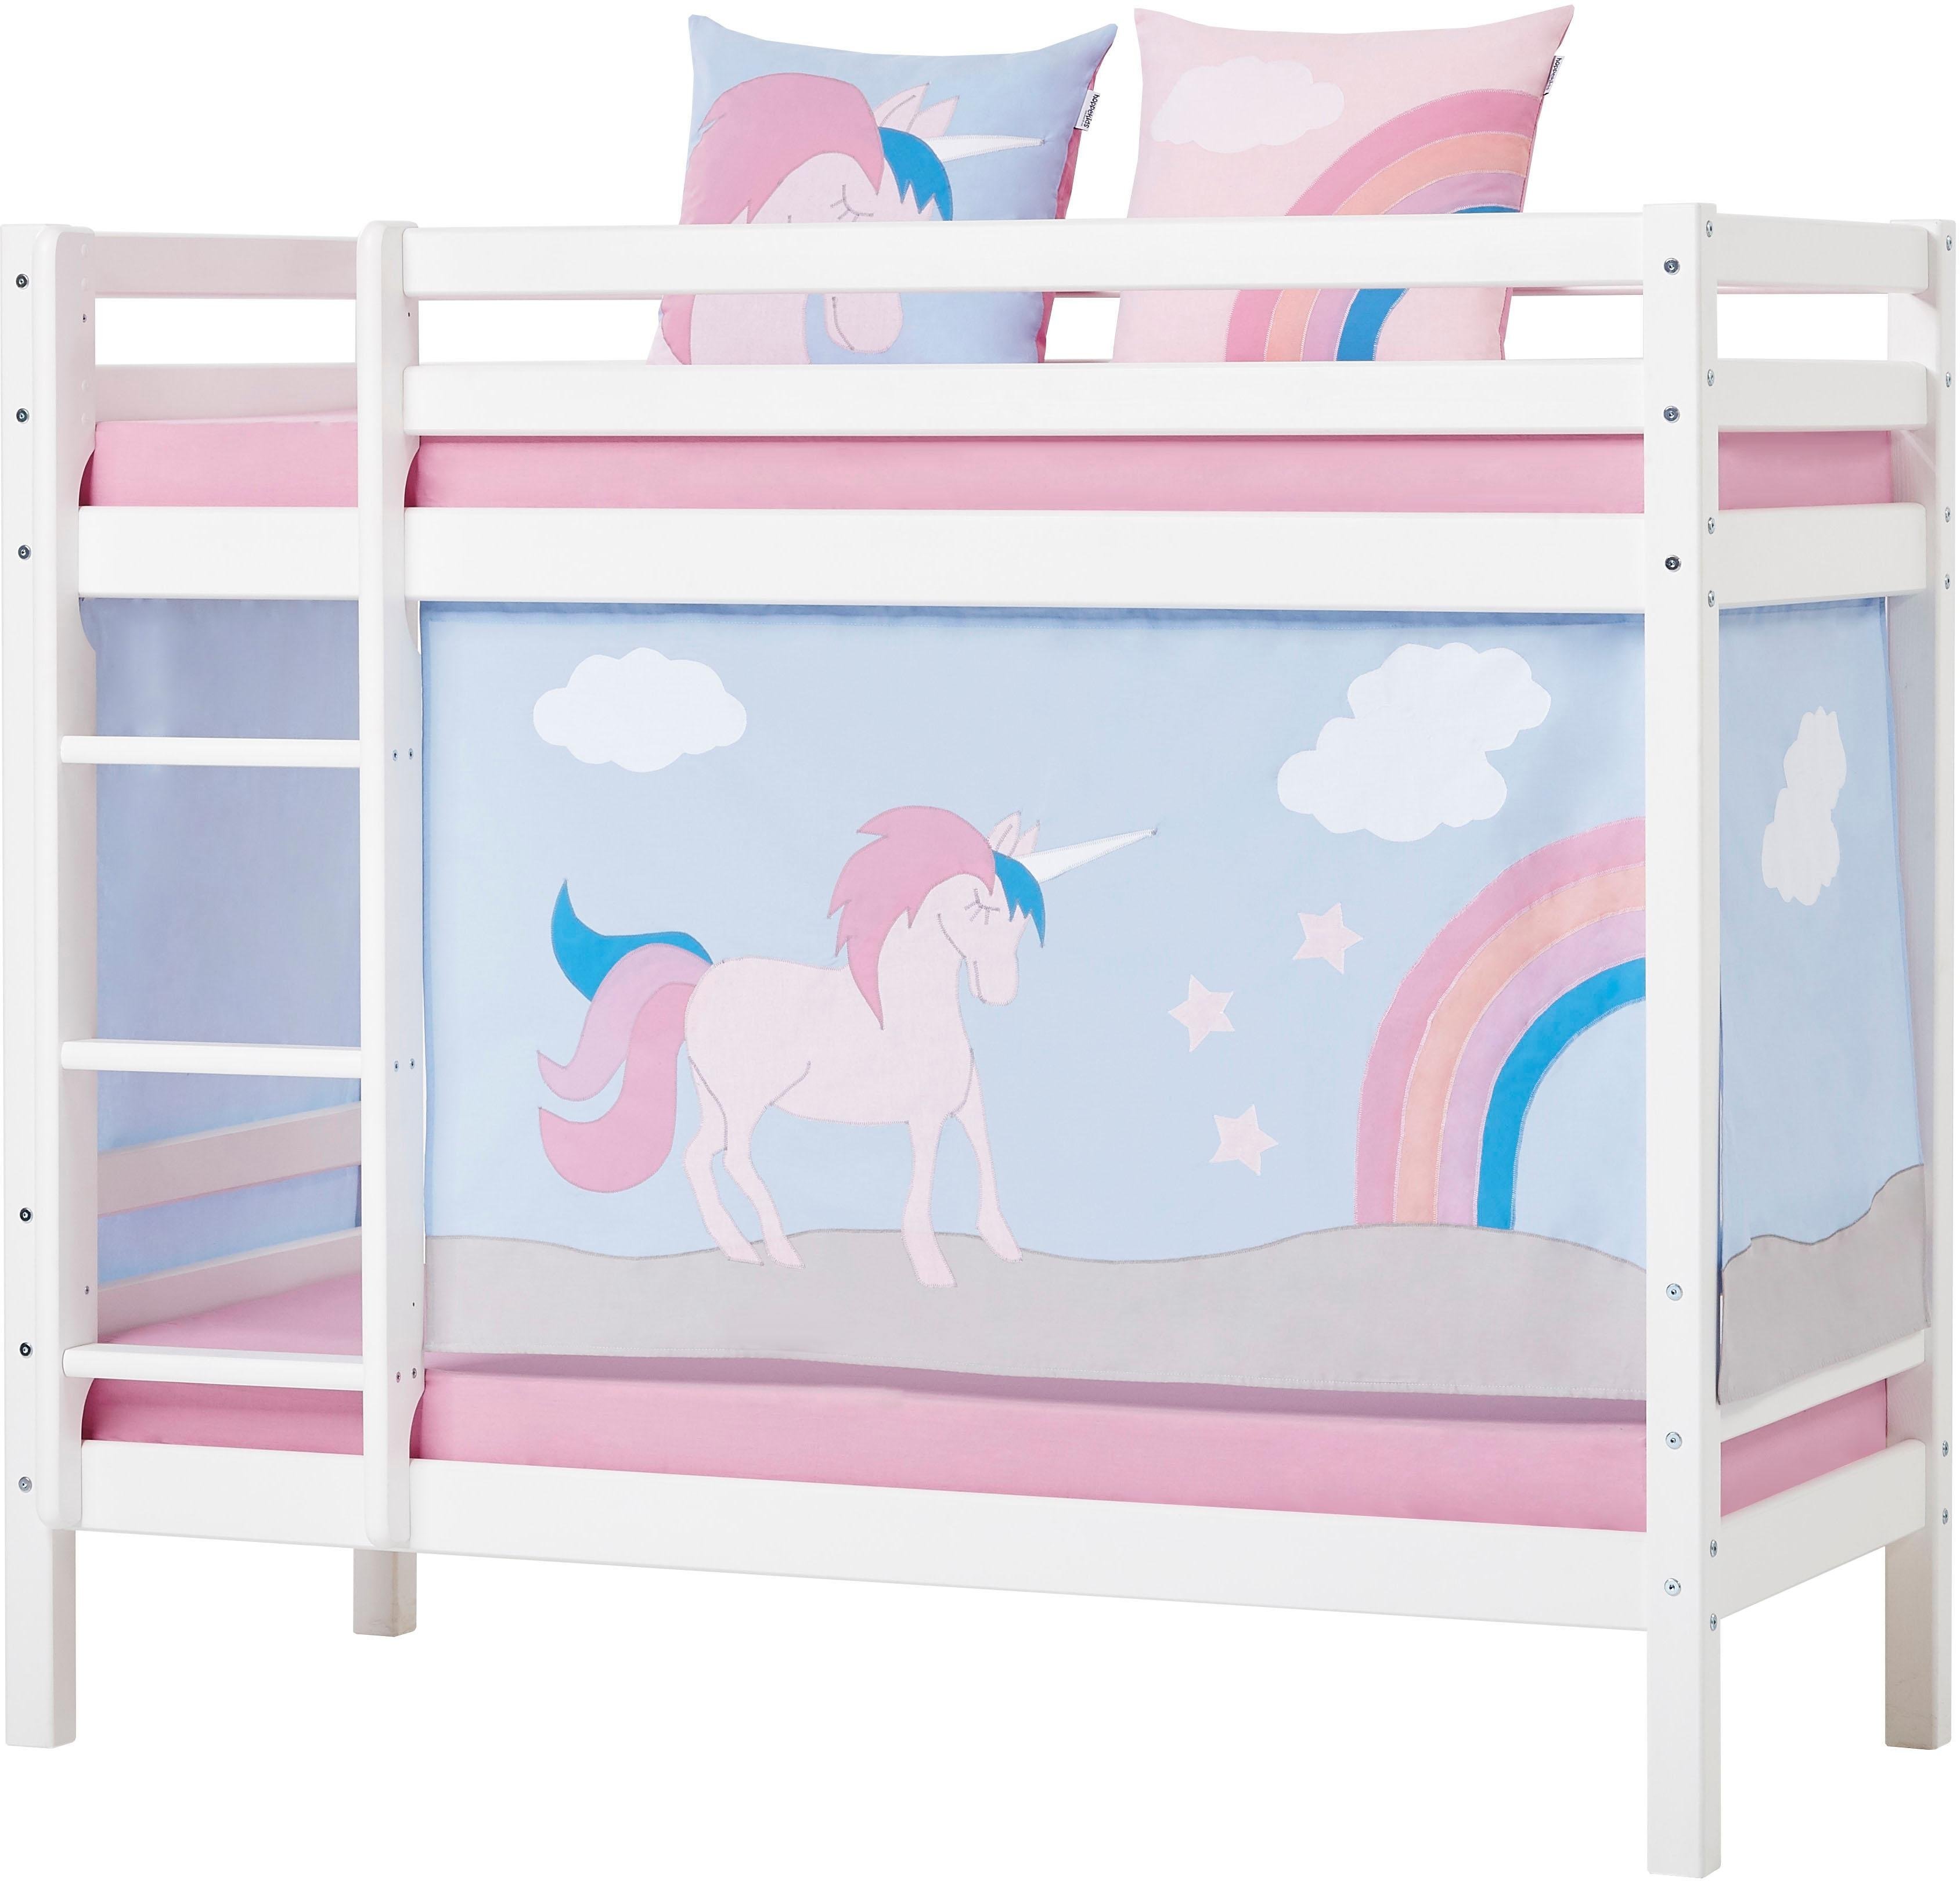 Кровать единорог. Детская кроватка с единорогом. Кровать с единорогом детская. Кровать Единорог для девочки. Двухъярусная кровать с единорогами.